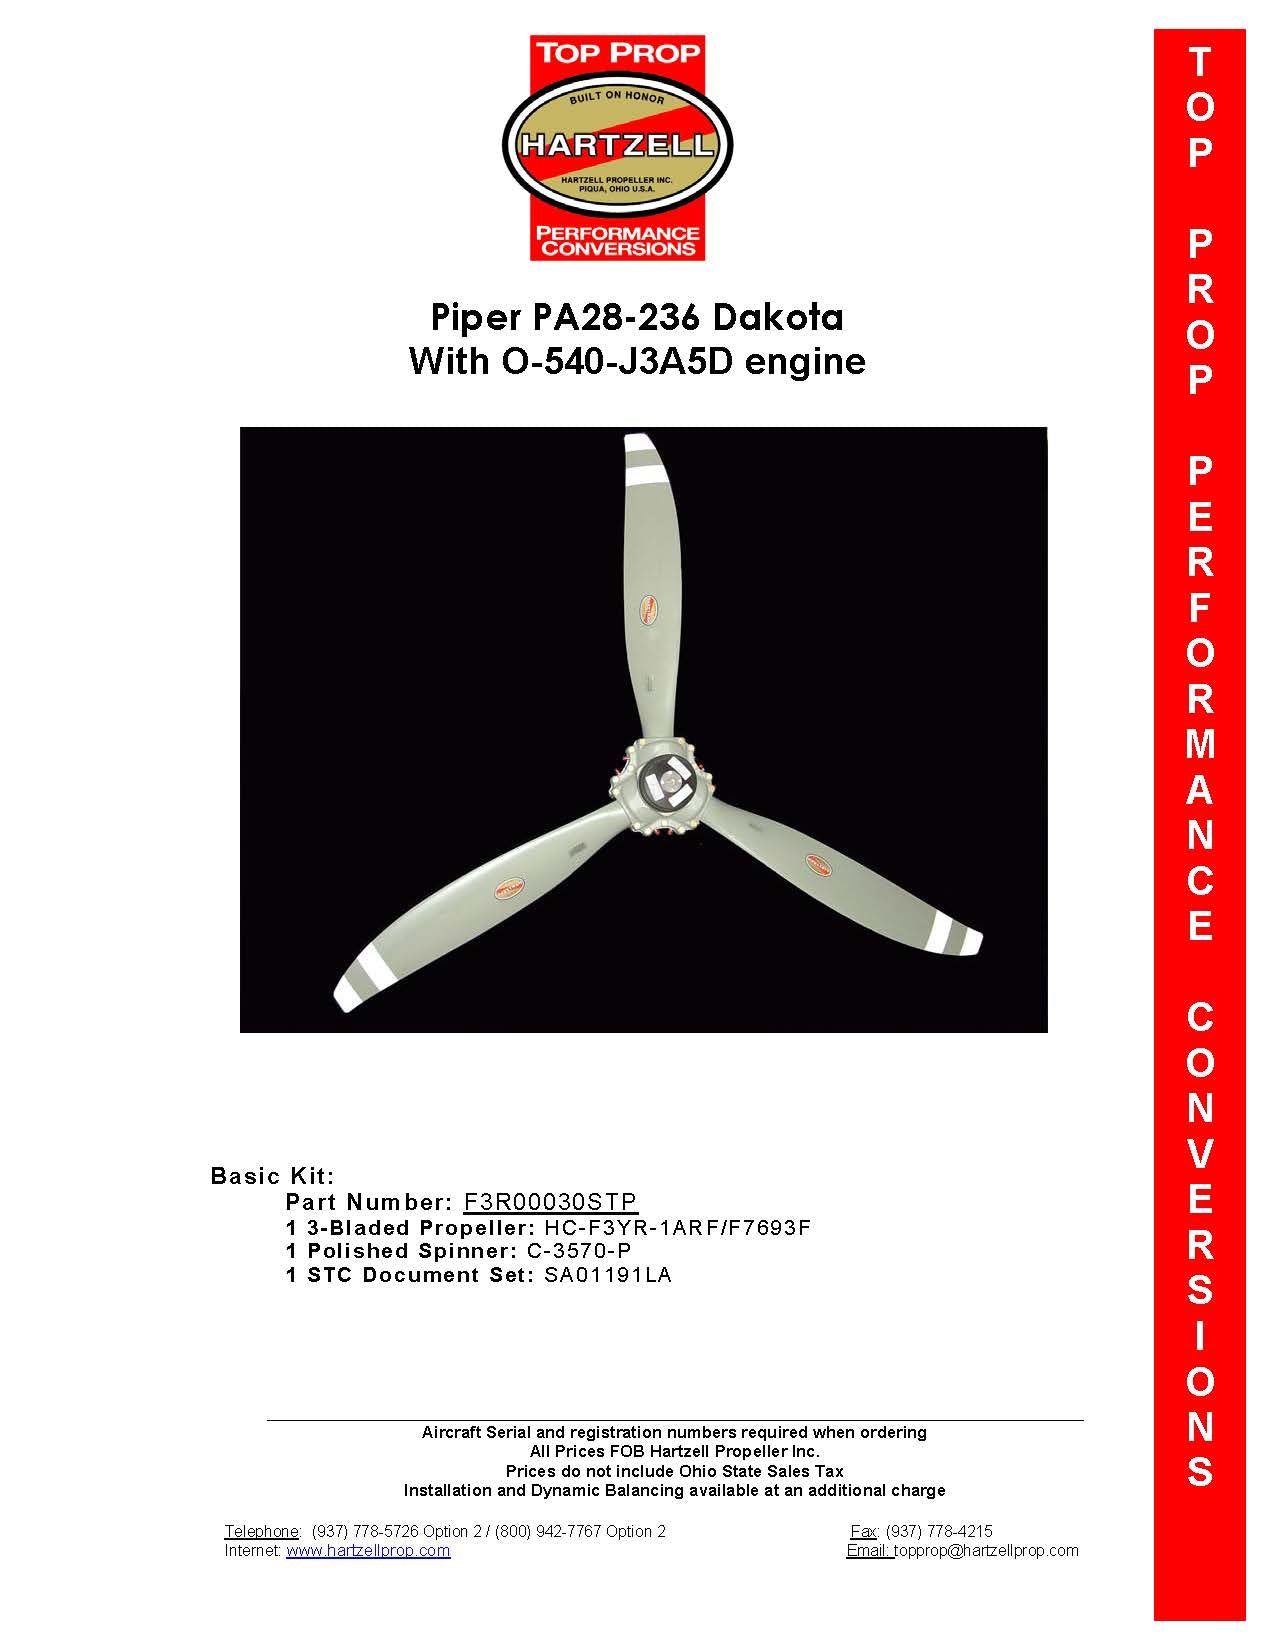 PIPER-DAKOTA-PA28-236-F3R00030STP-PAGE-1